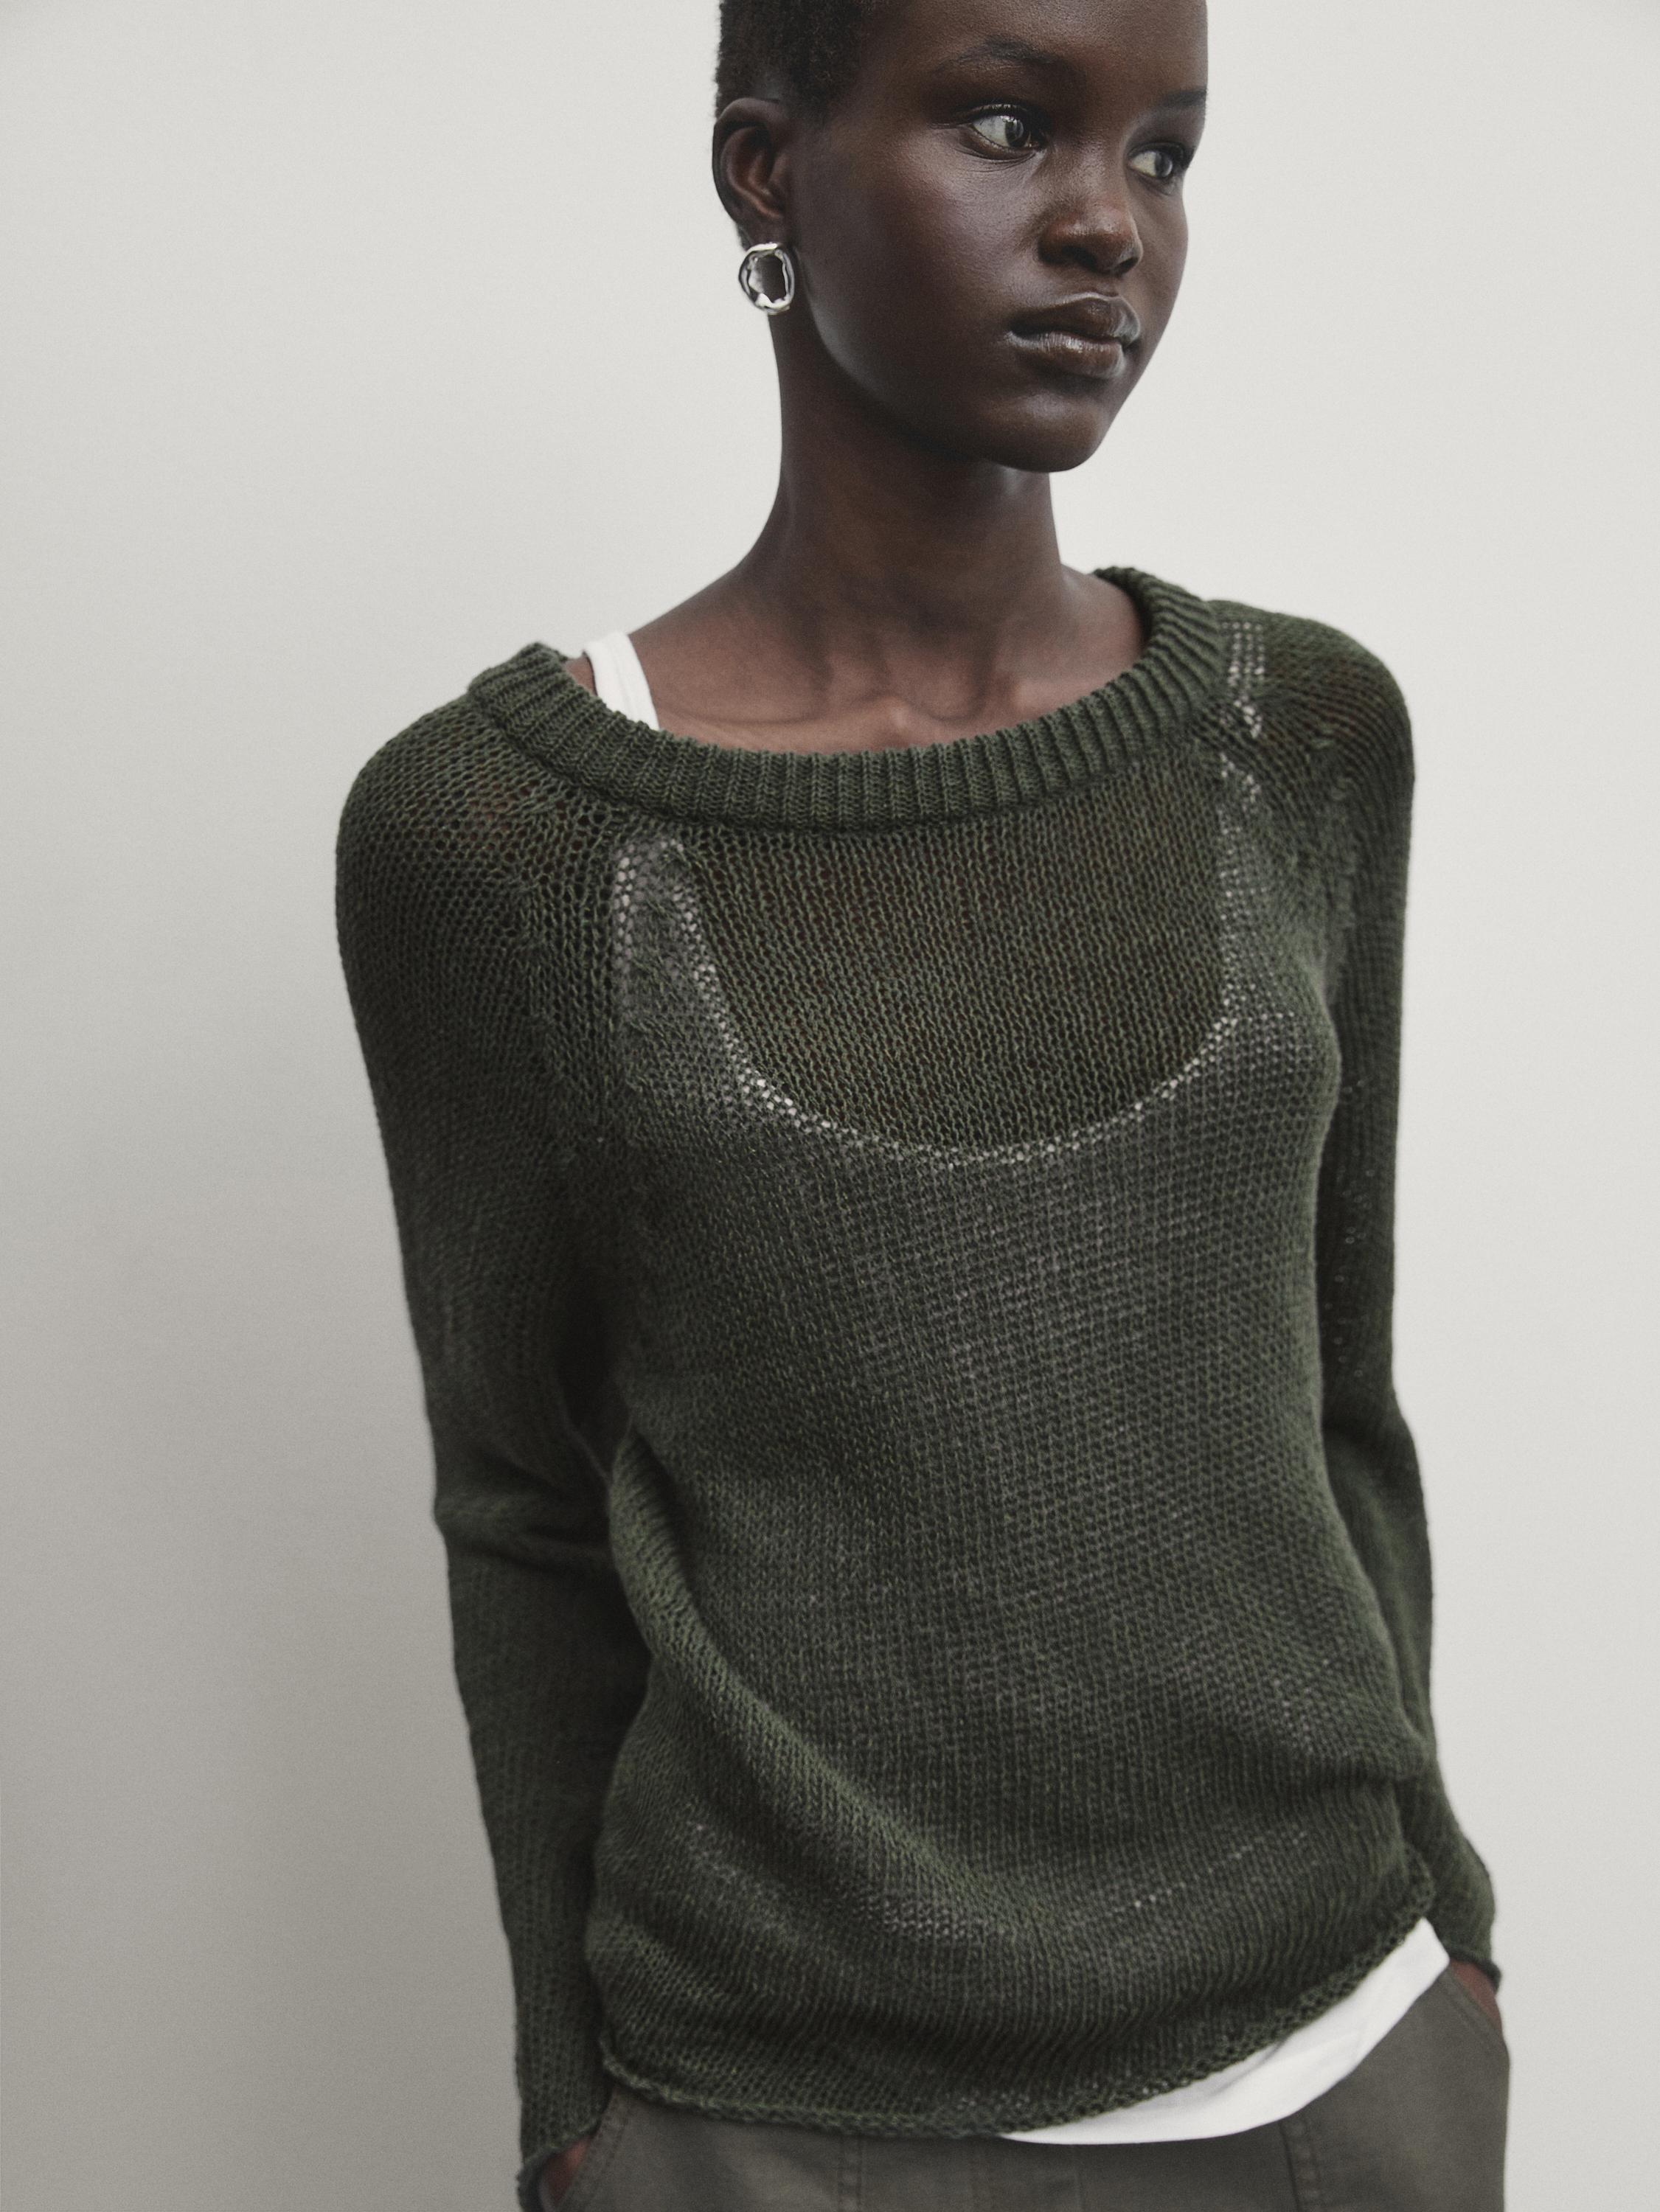 Cotton blend knit crew neck sweater - Dark green | ZARA United States